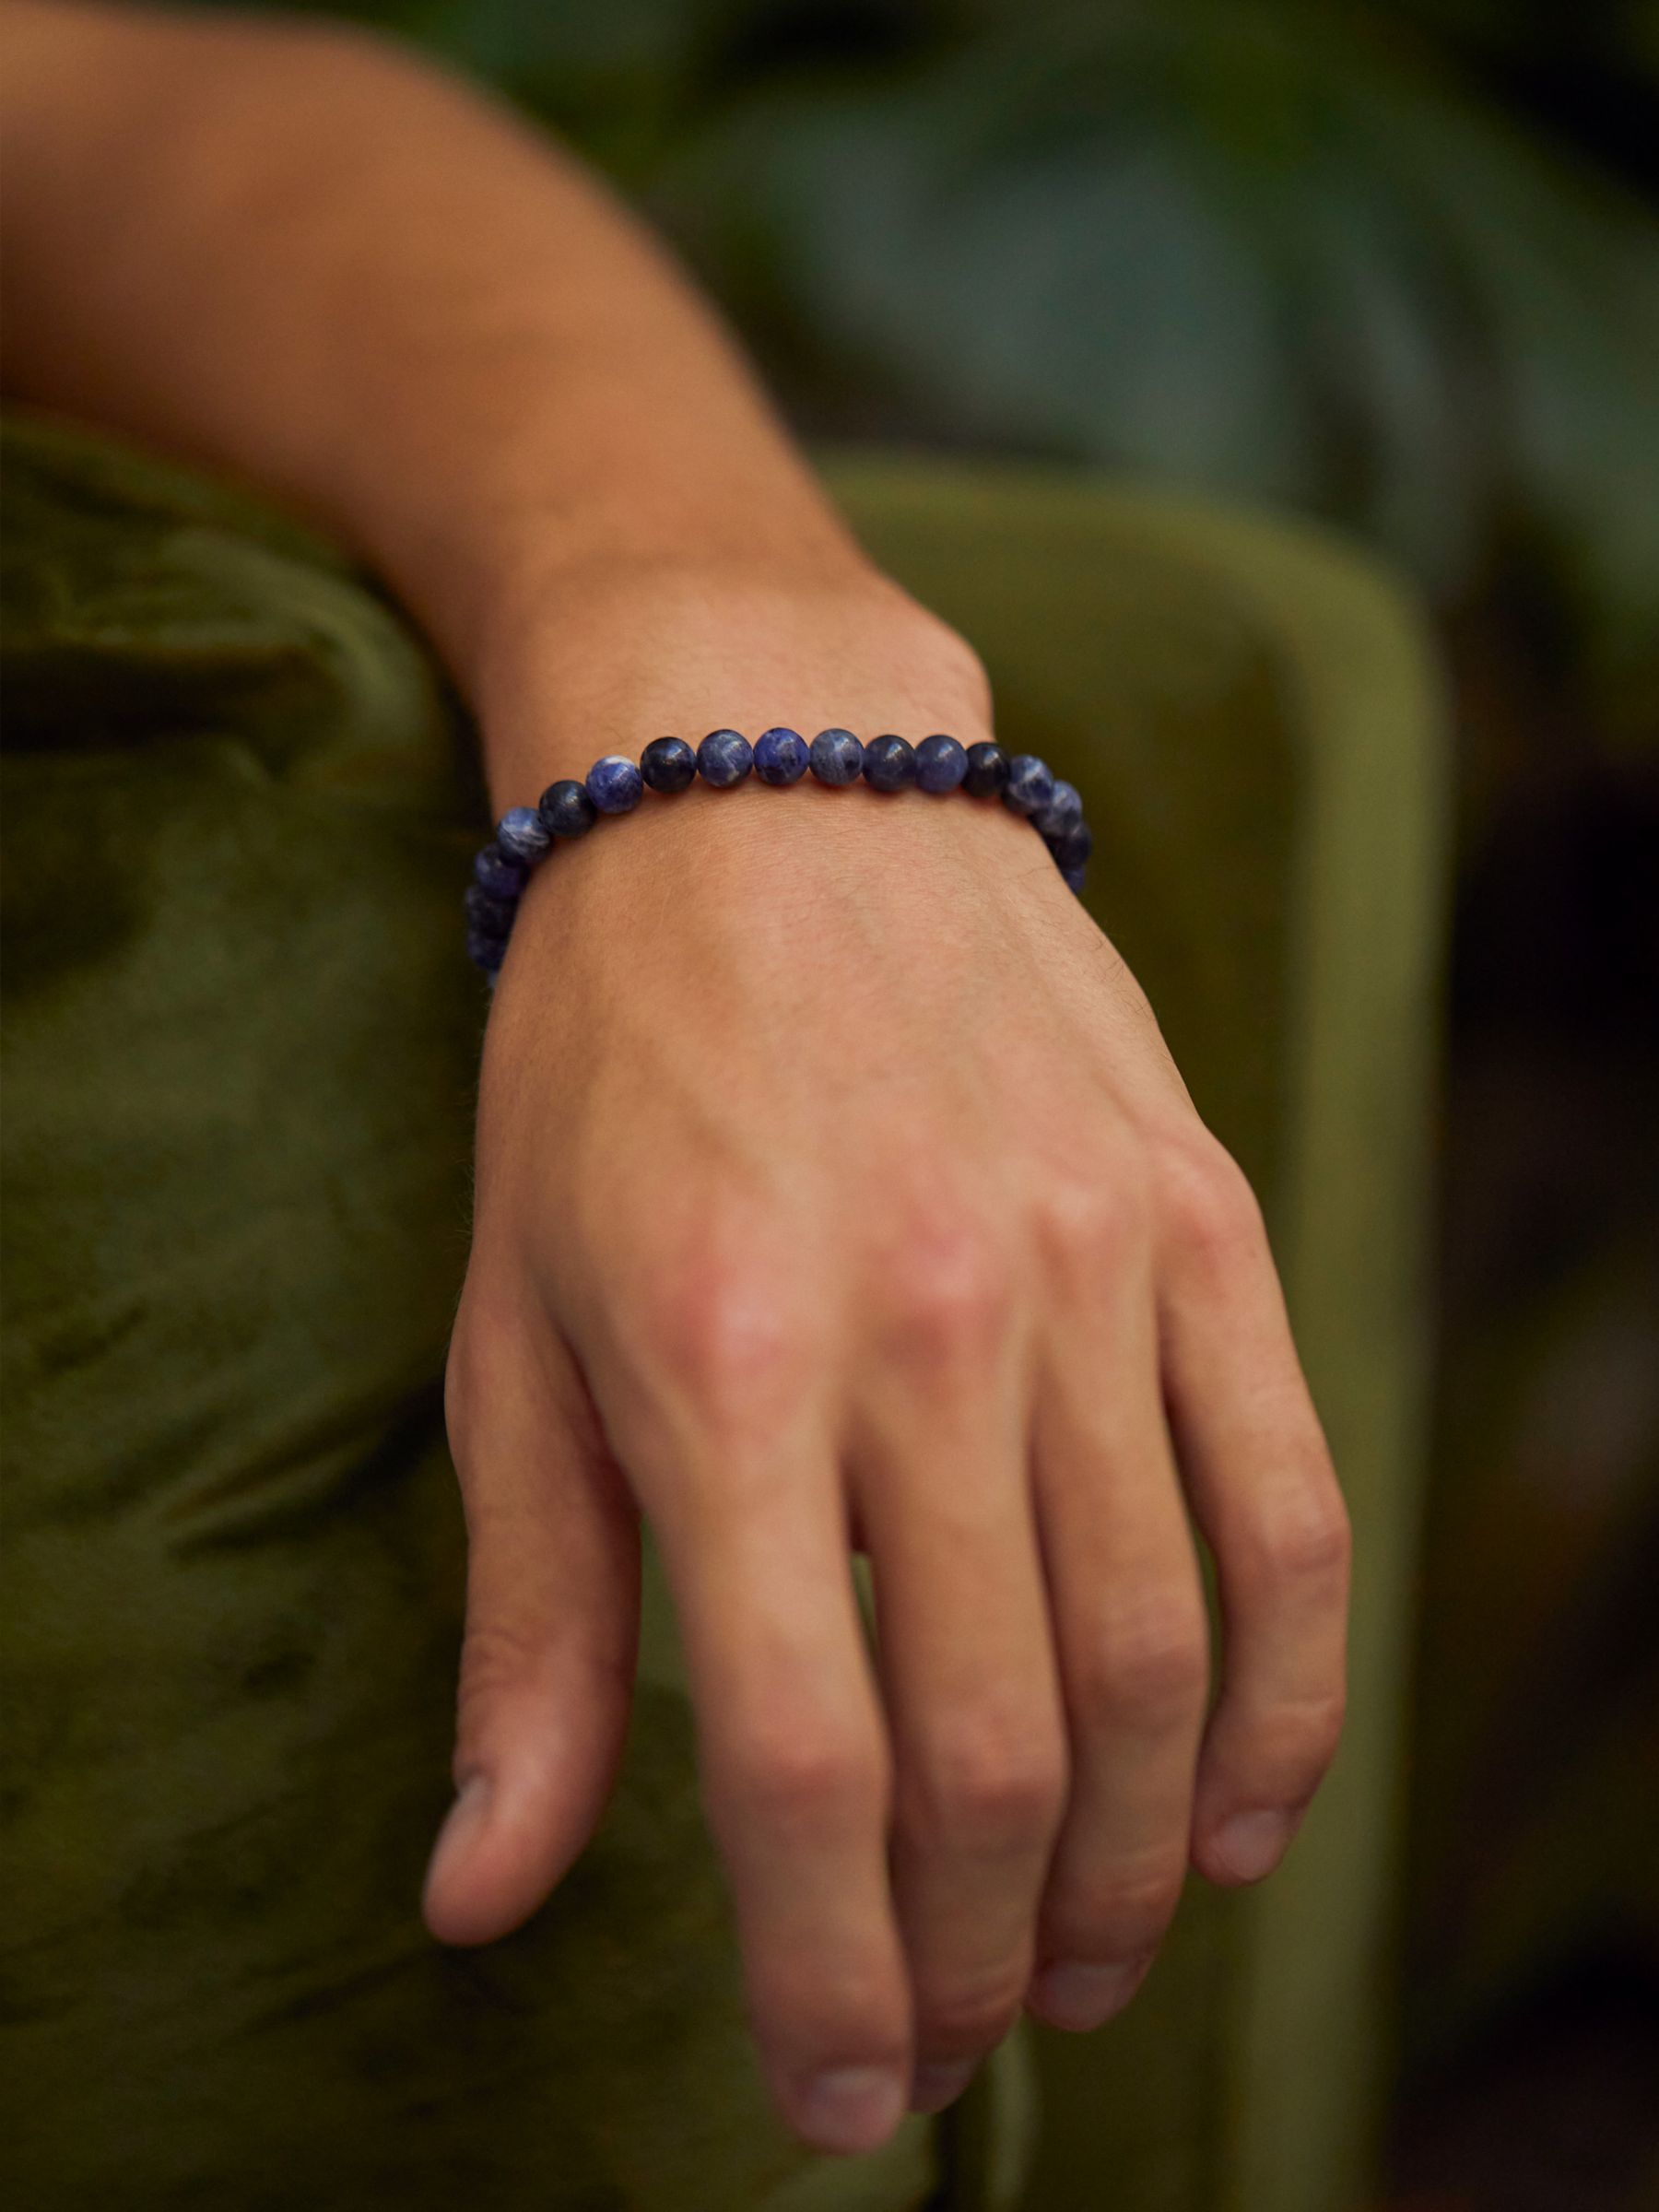 Buy BARTLETT LONDON Men's Lapis Lazuli Beaded Bracelet, Blue Online at johnlewis.com